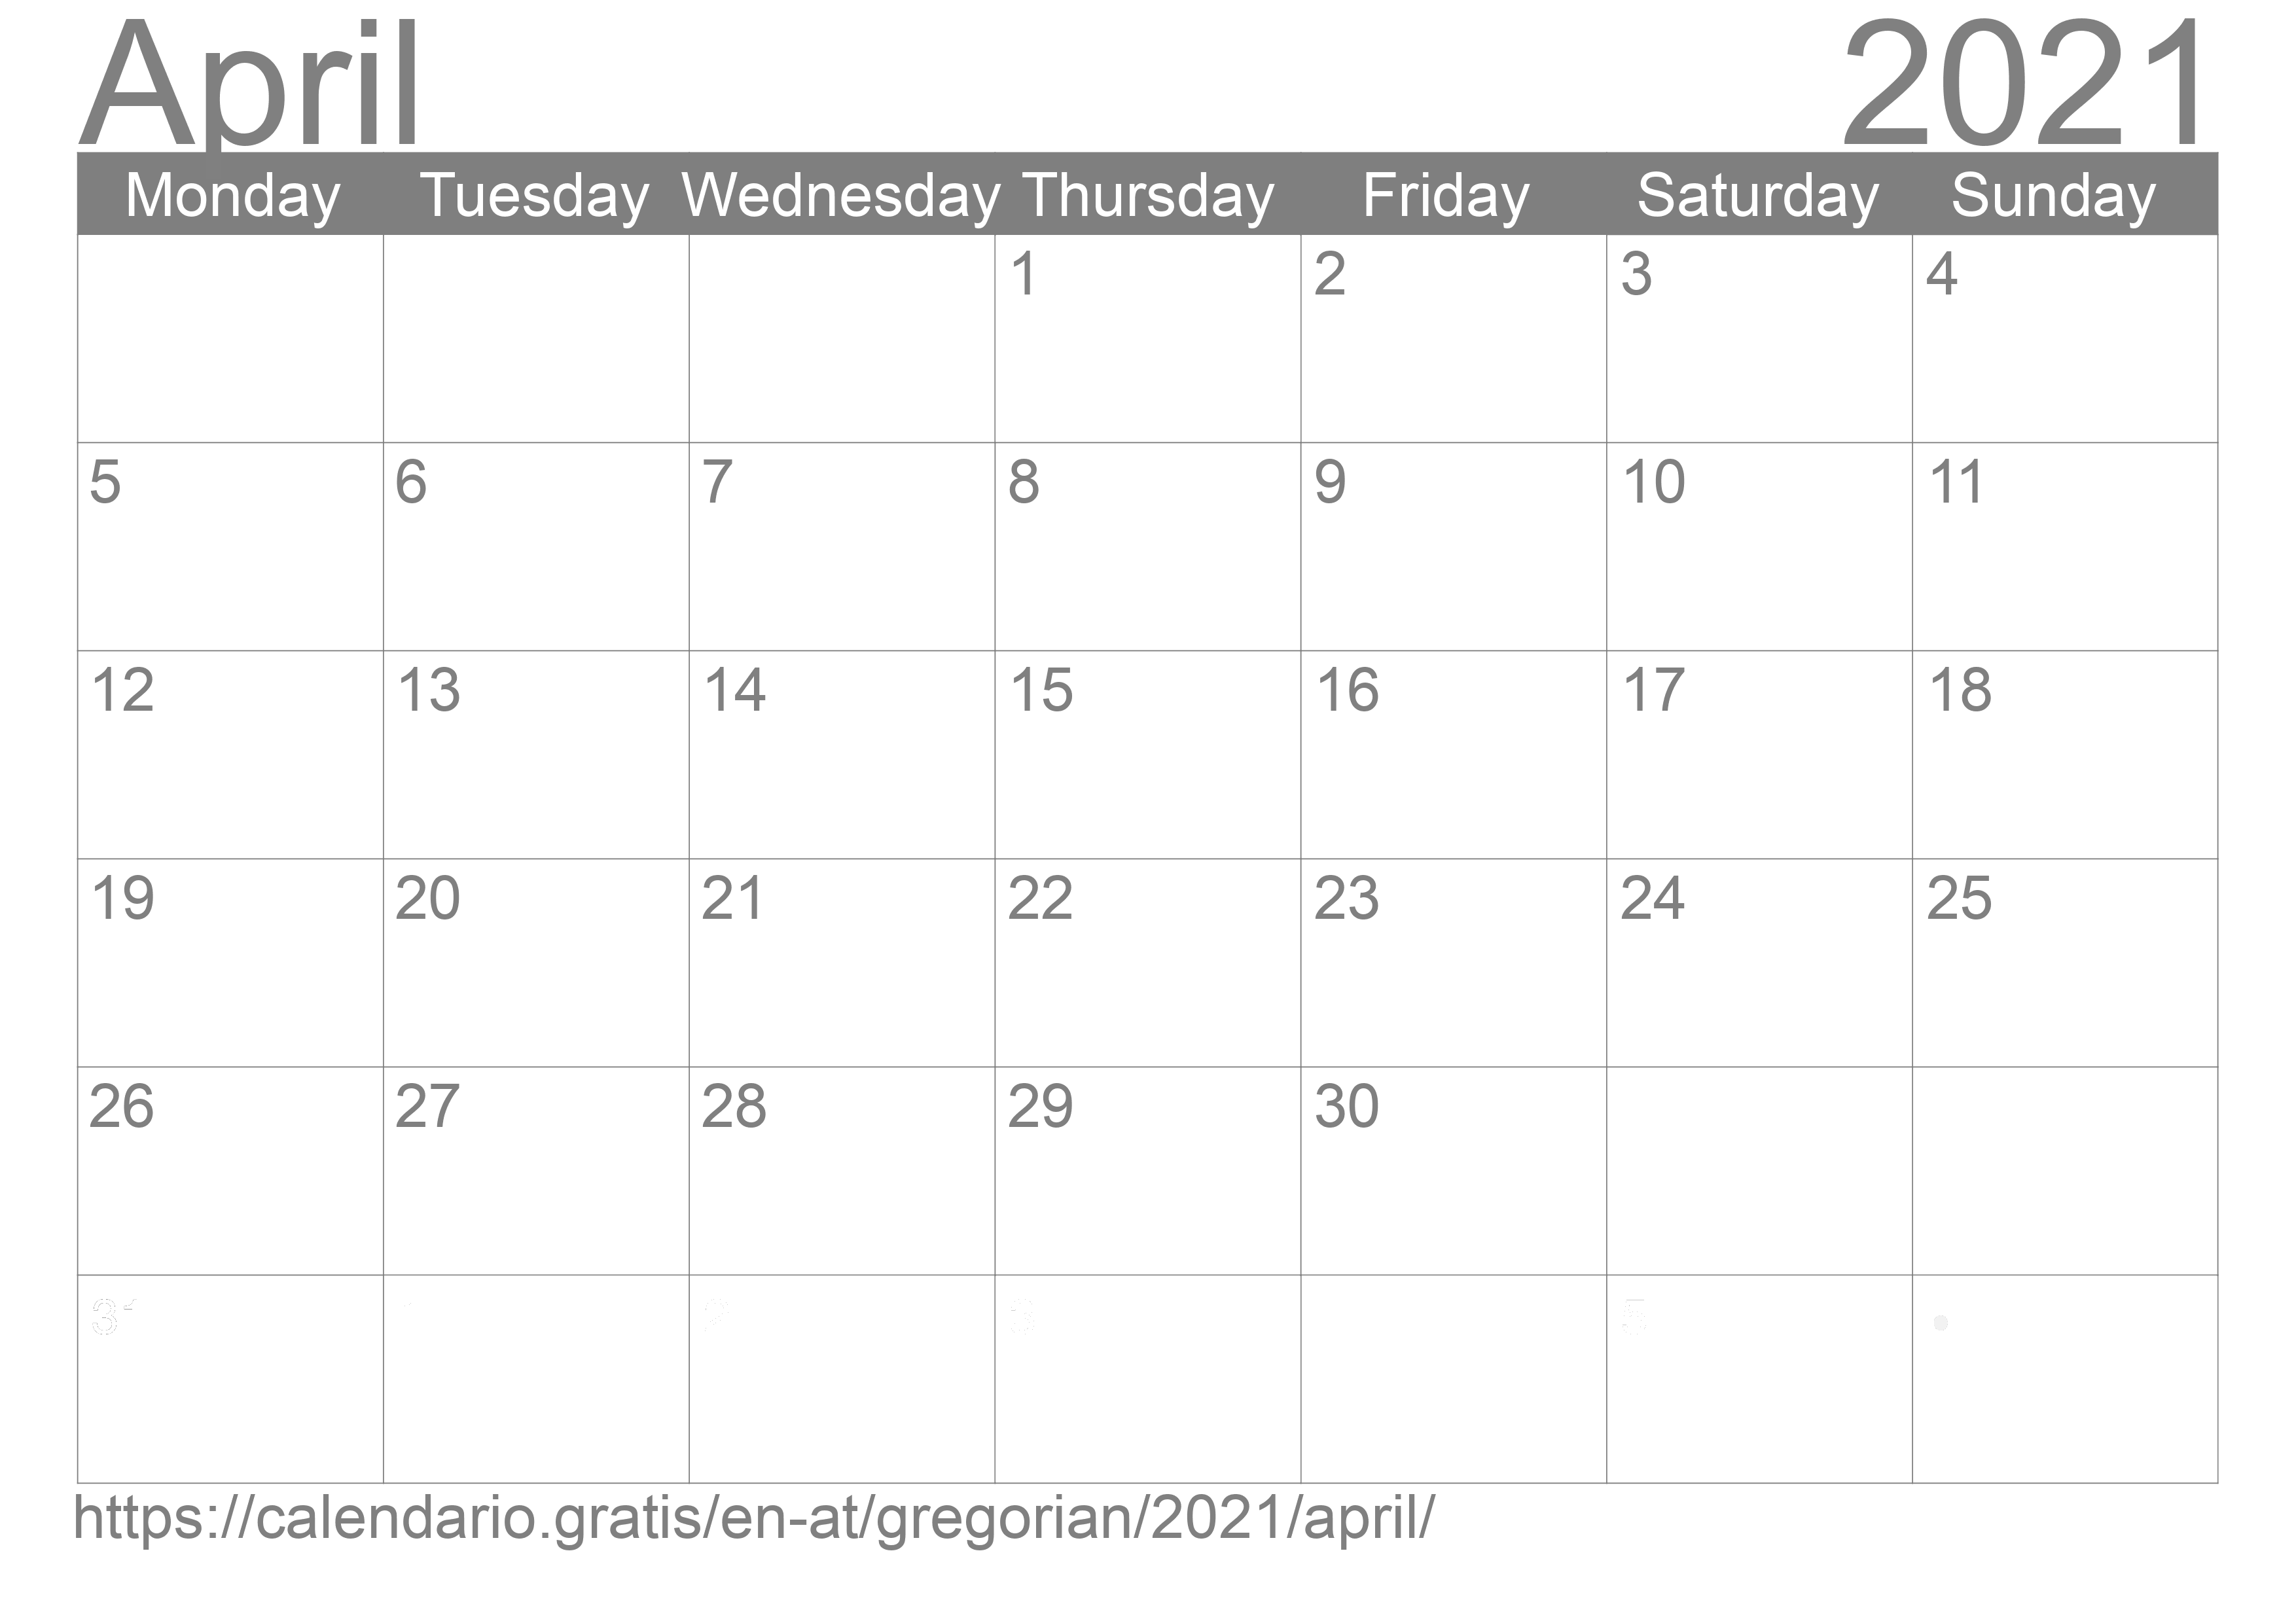 Calendar April 2021 to print